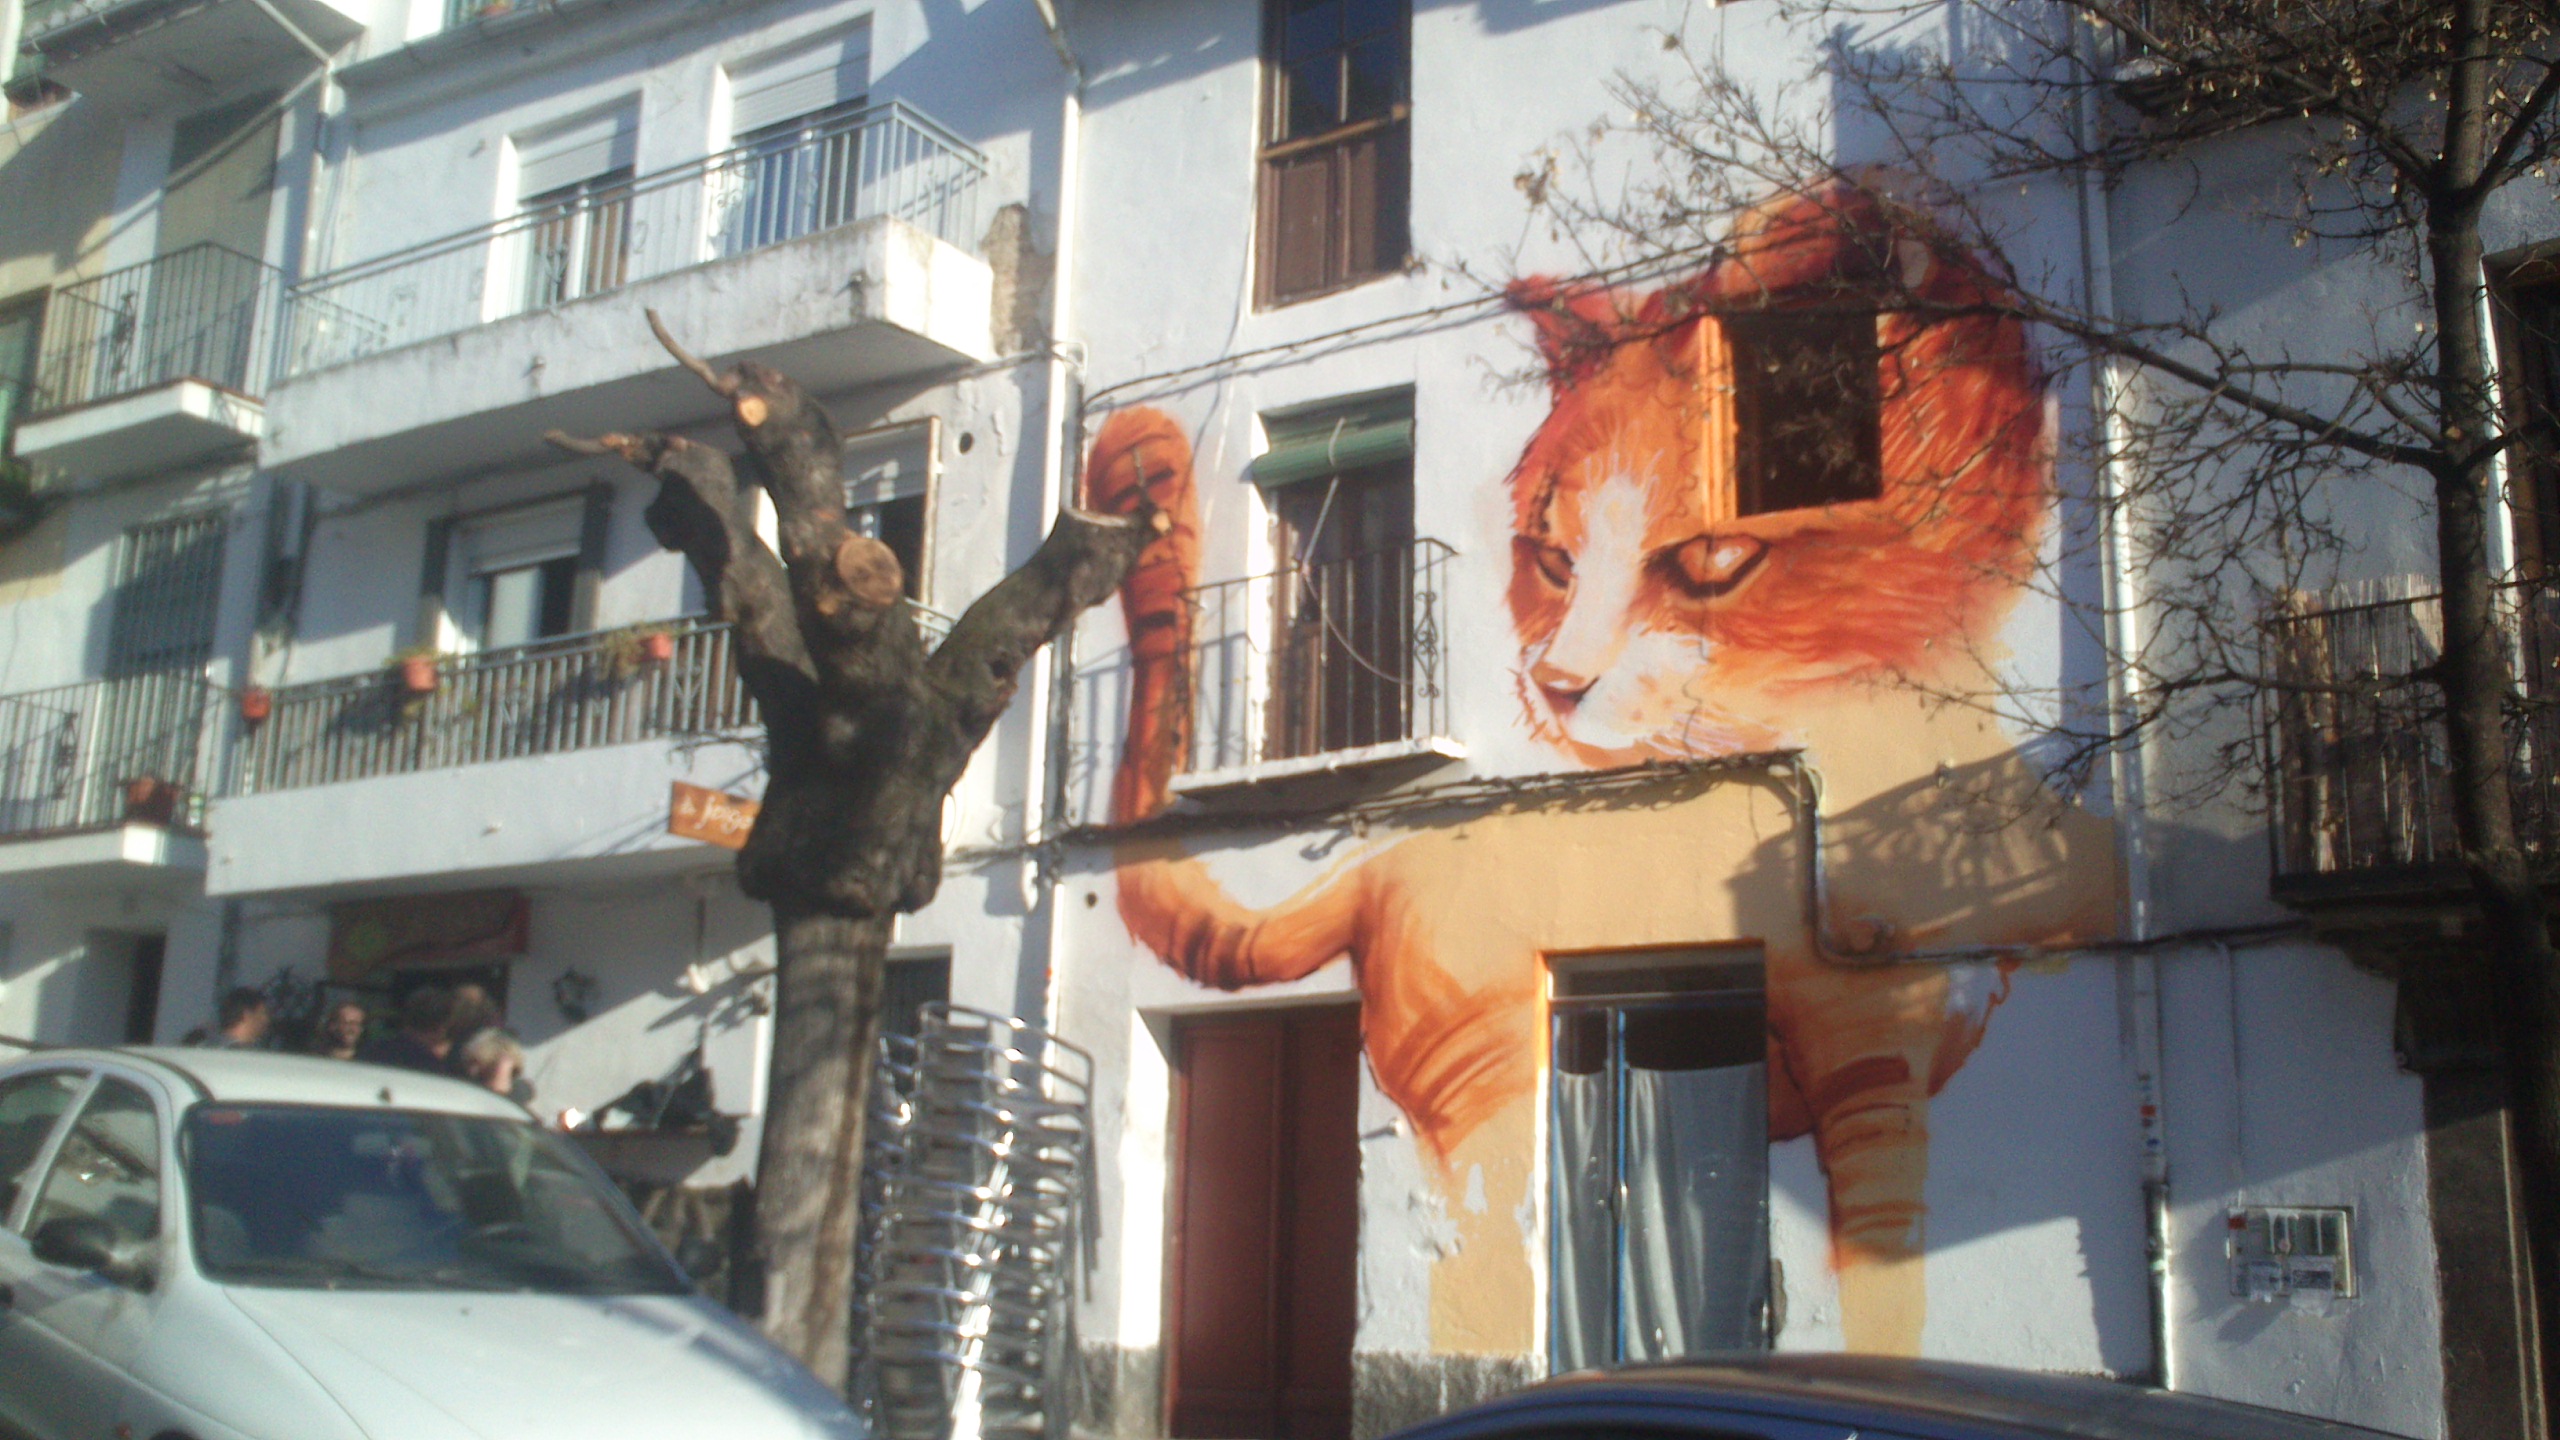 El Niño de las Pinturas & Street Art à Grenade